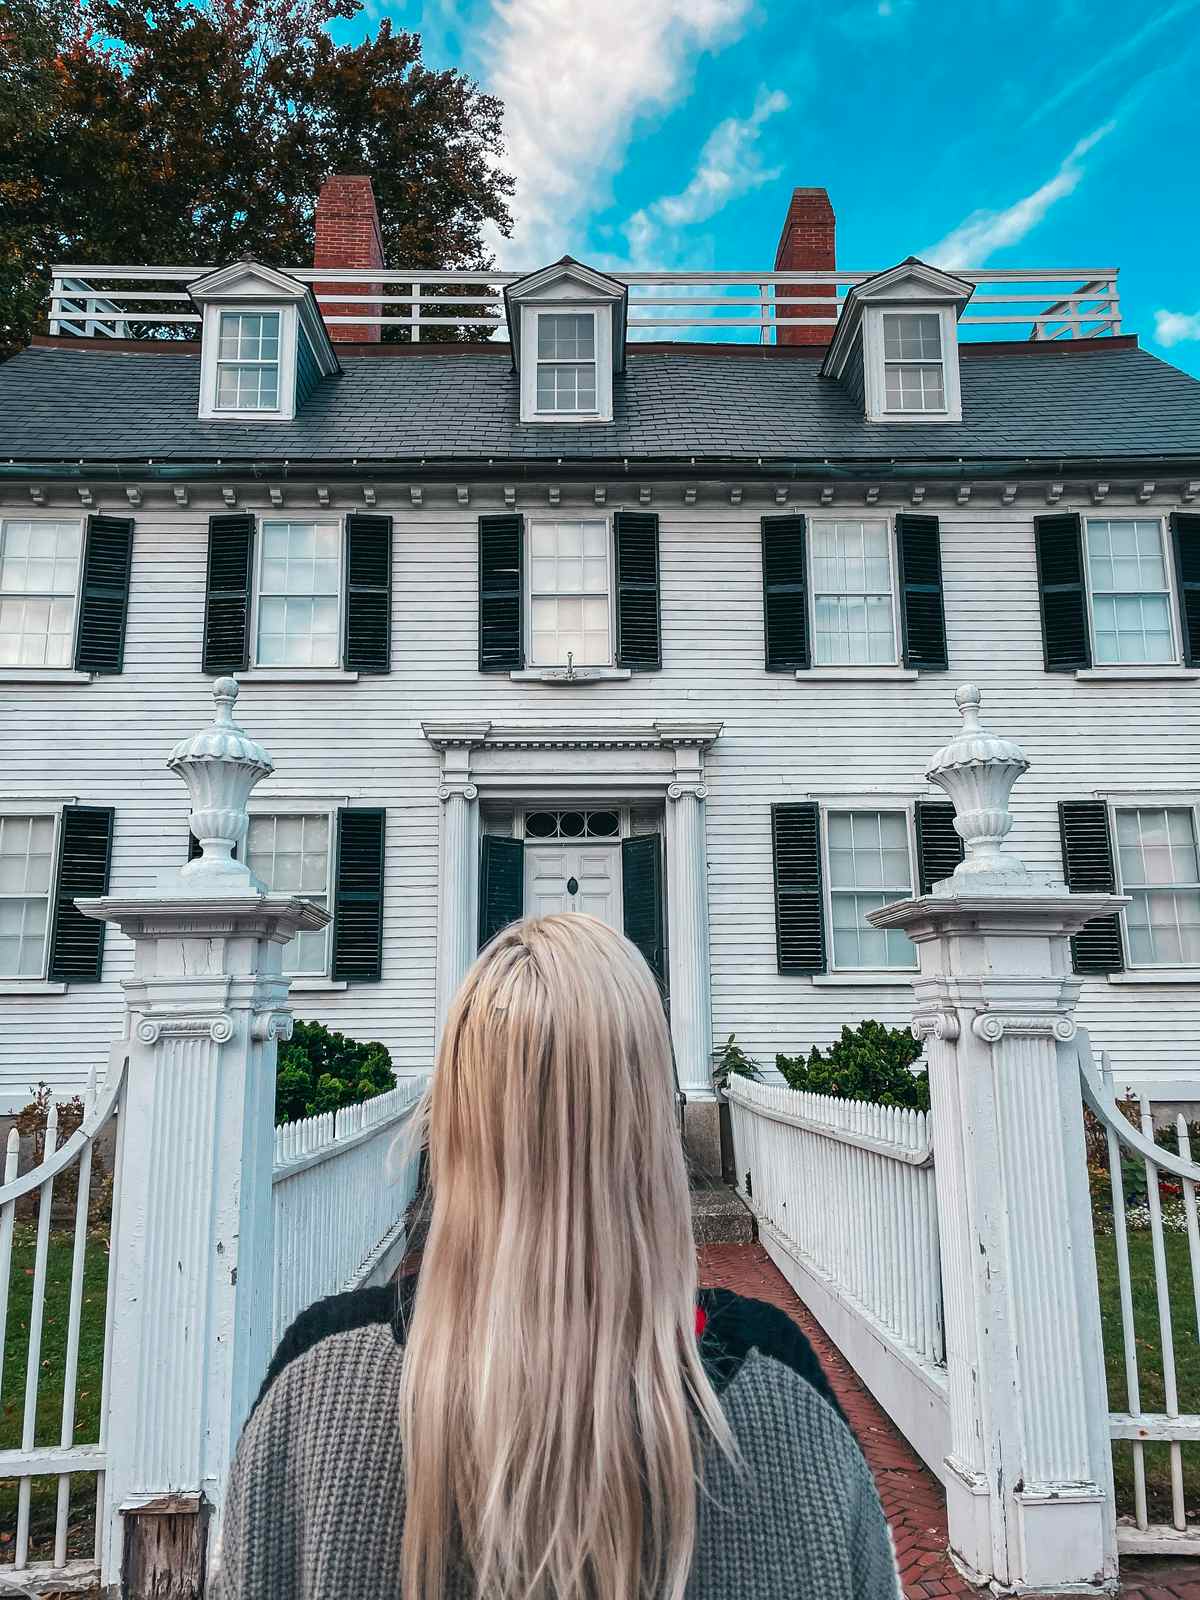 Hocus Pocus filming spot in Salem Massachusetts